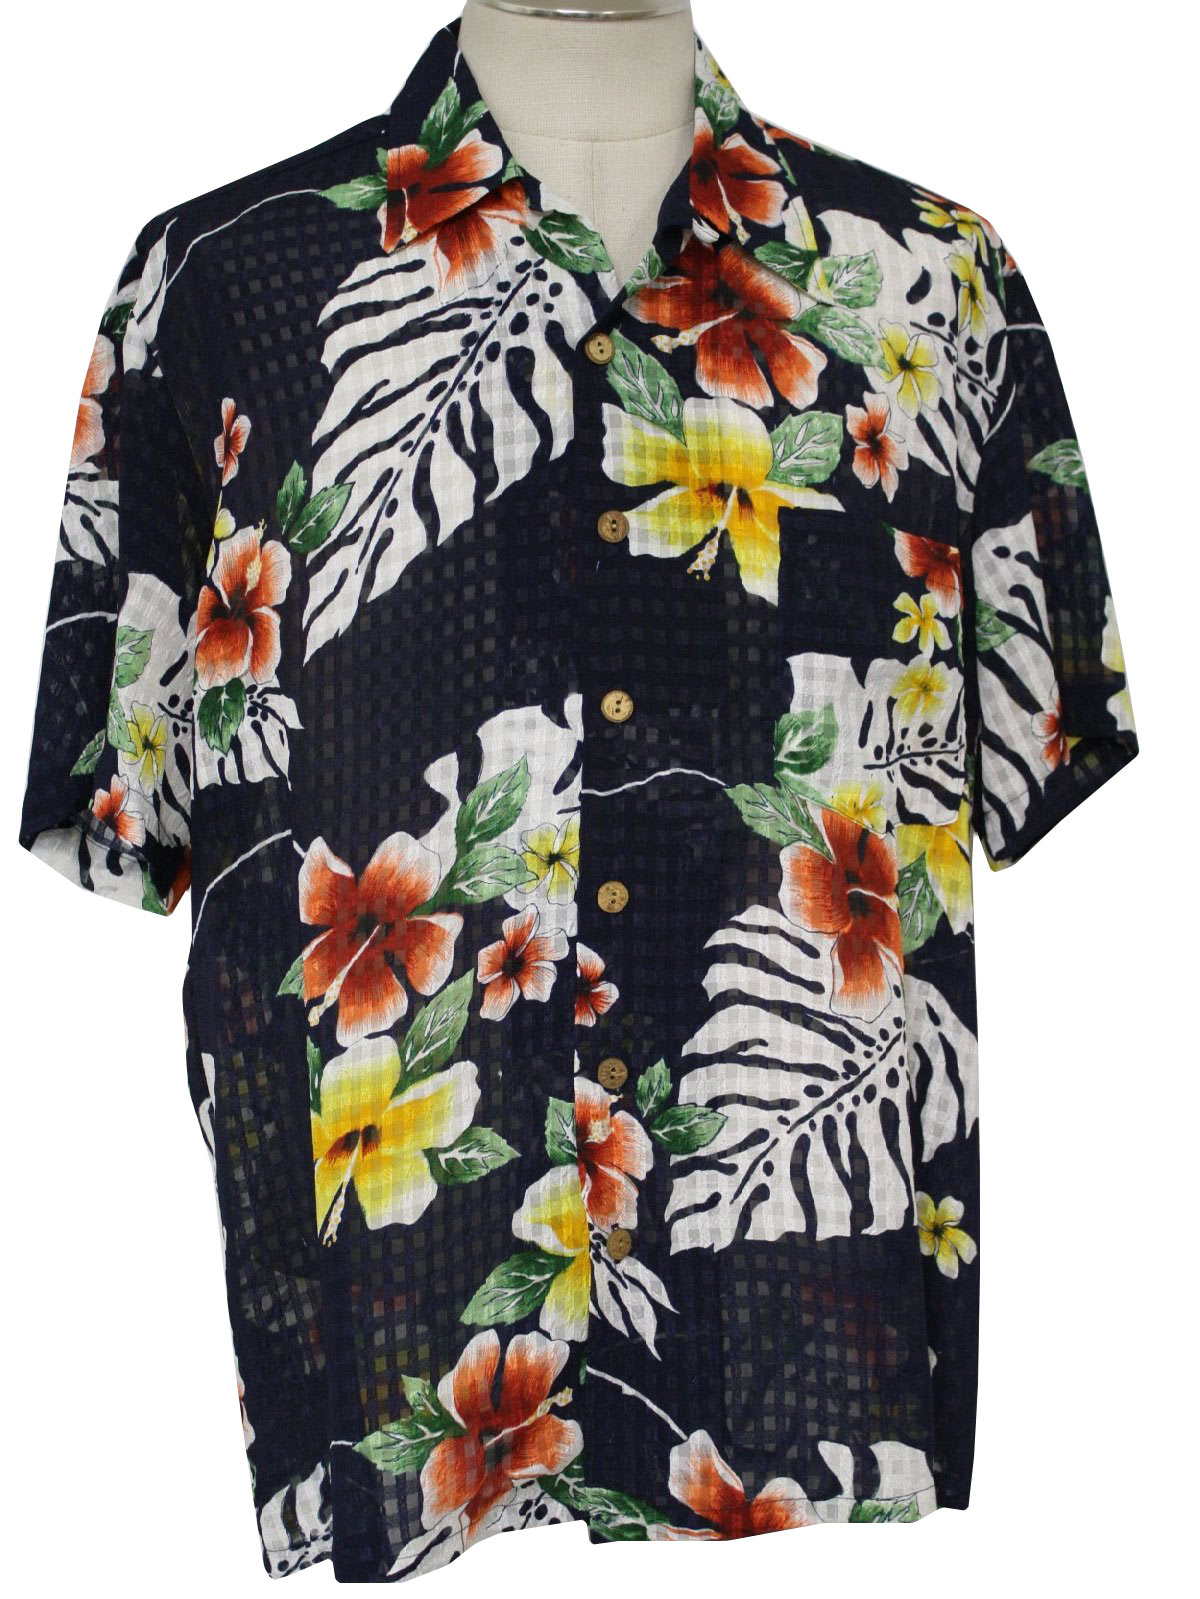 90s Retro Hawaiian Shirt: 90s -Kennington- Mens navy, white, red, green ...